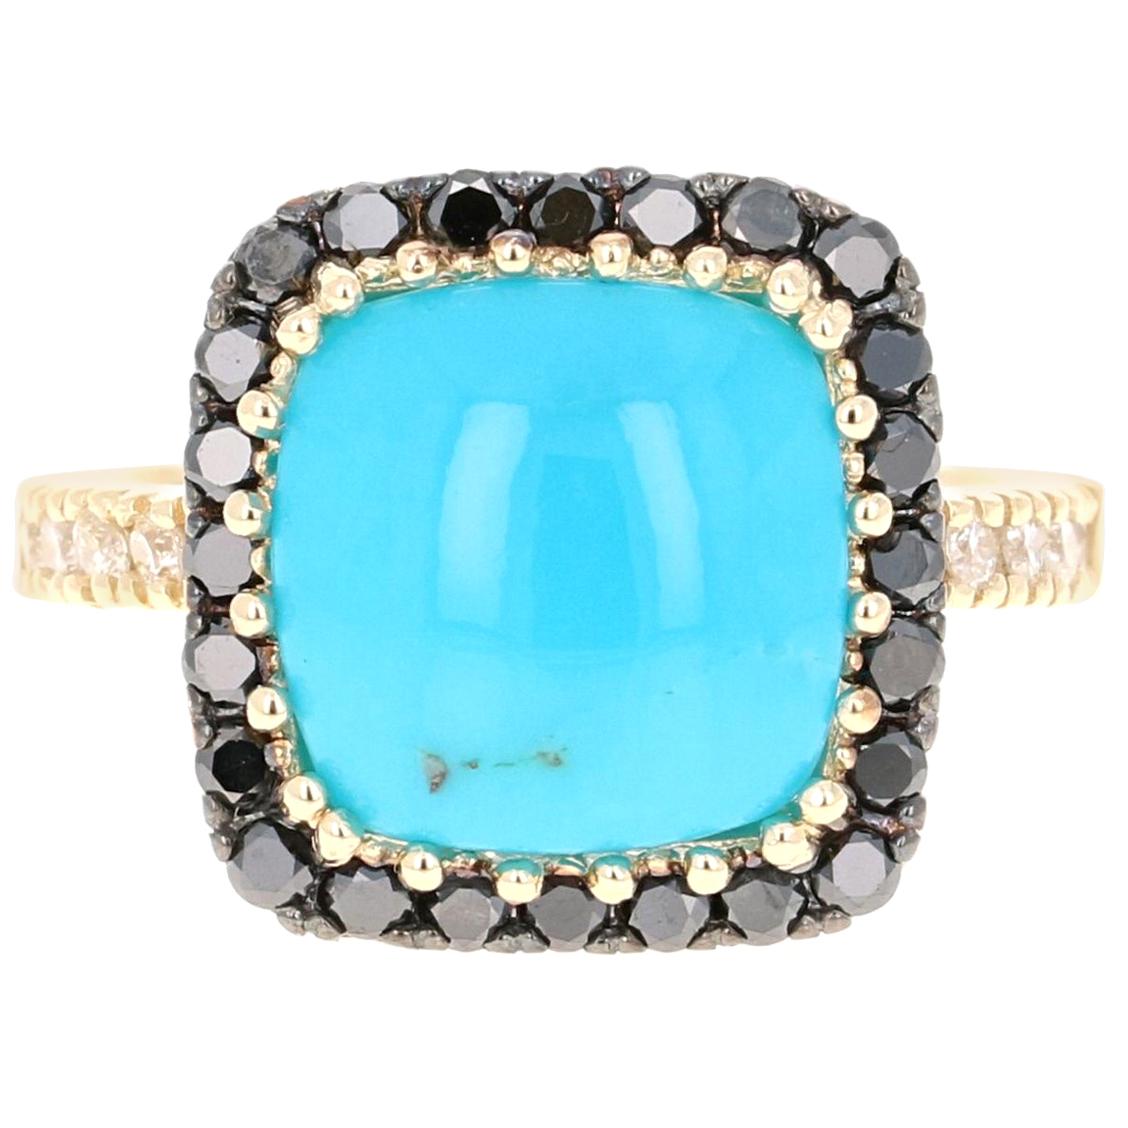 5.26 Carat Turquoise Black Diamond 14 Karat Yellow Gold Ring